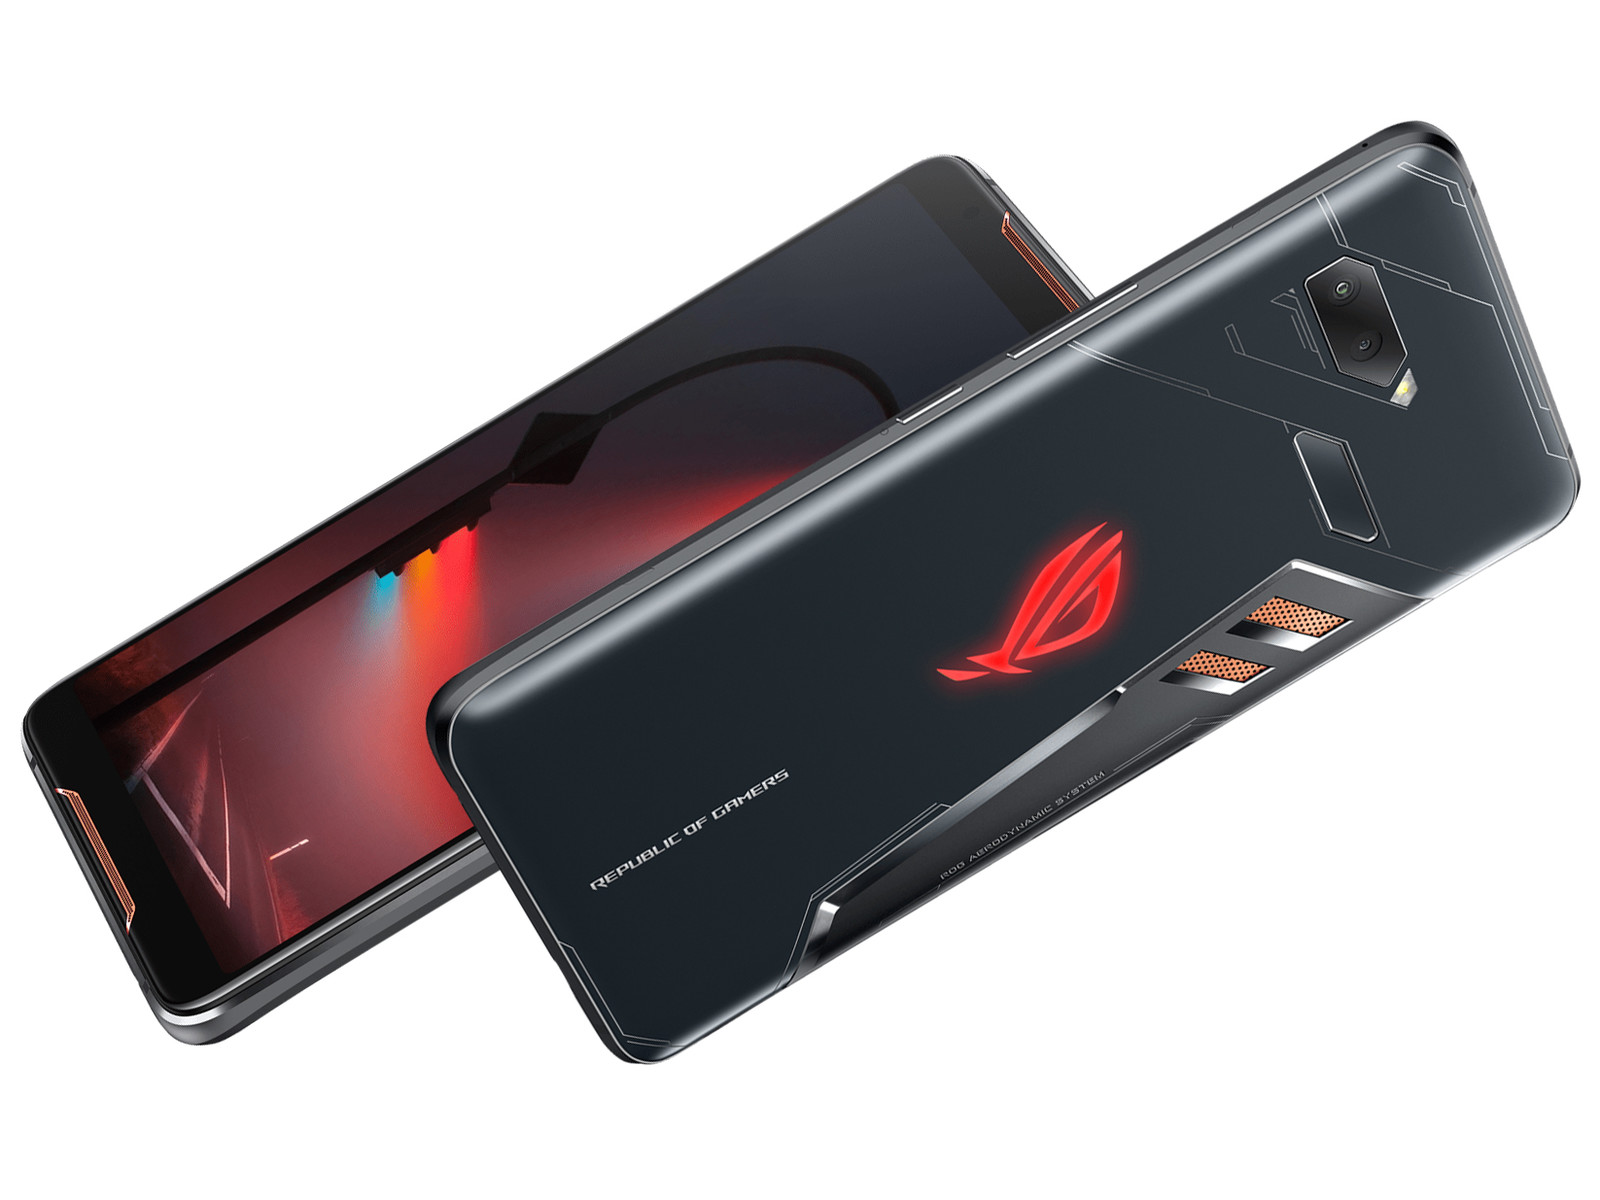 Với Asus ROG Phone, trò chơi của bạn sẽ trở nên hoàn hảo hơn bao giờ hết. Hình ảnh sống động và âm thanh chân thật sẽ mang đến trải nghiệm chơi game cực kỳ tuyệt vời. Một lựa chọn hoàn hảo cho các game thủ đích thực!